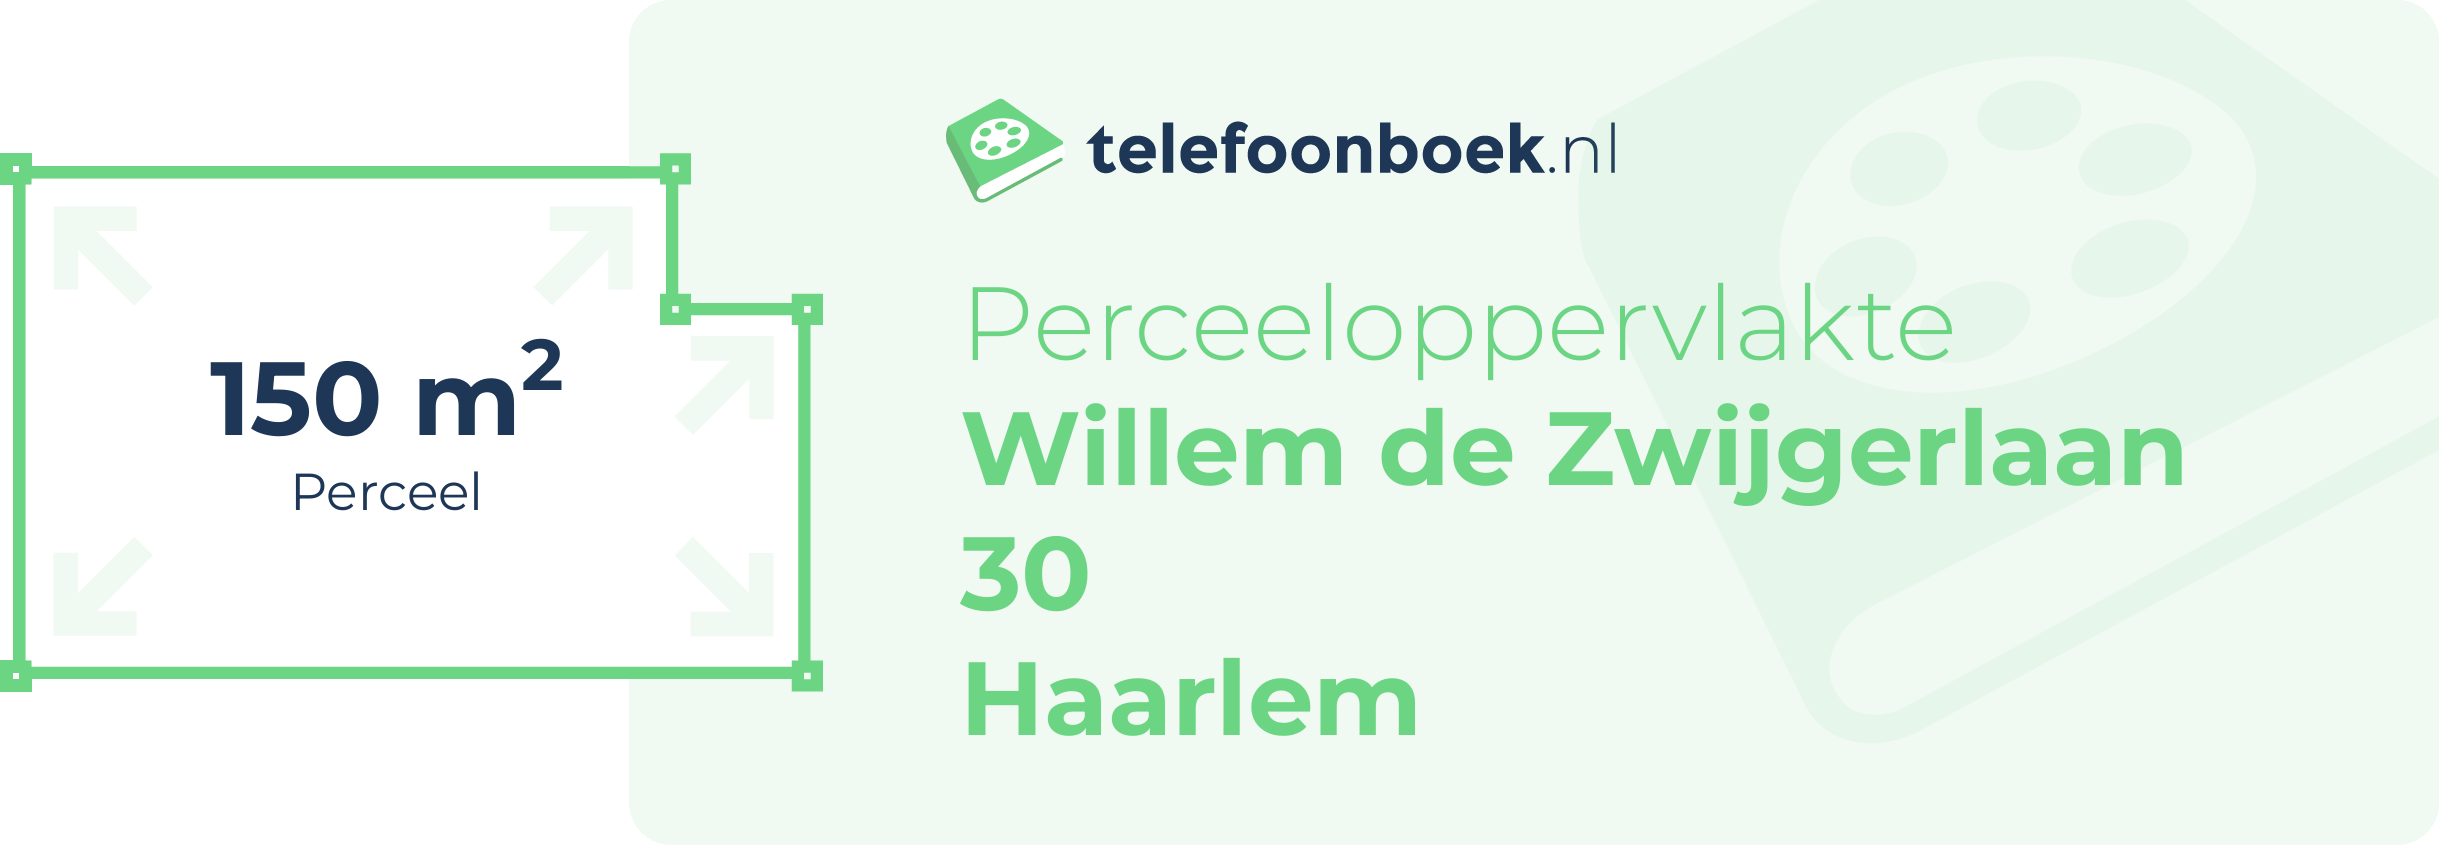 Perceeloppervlakte Willem De Zwijgerlaan 30 Haarlem